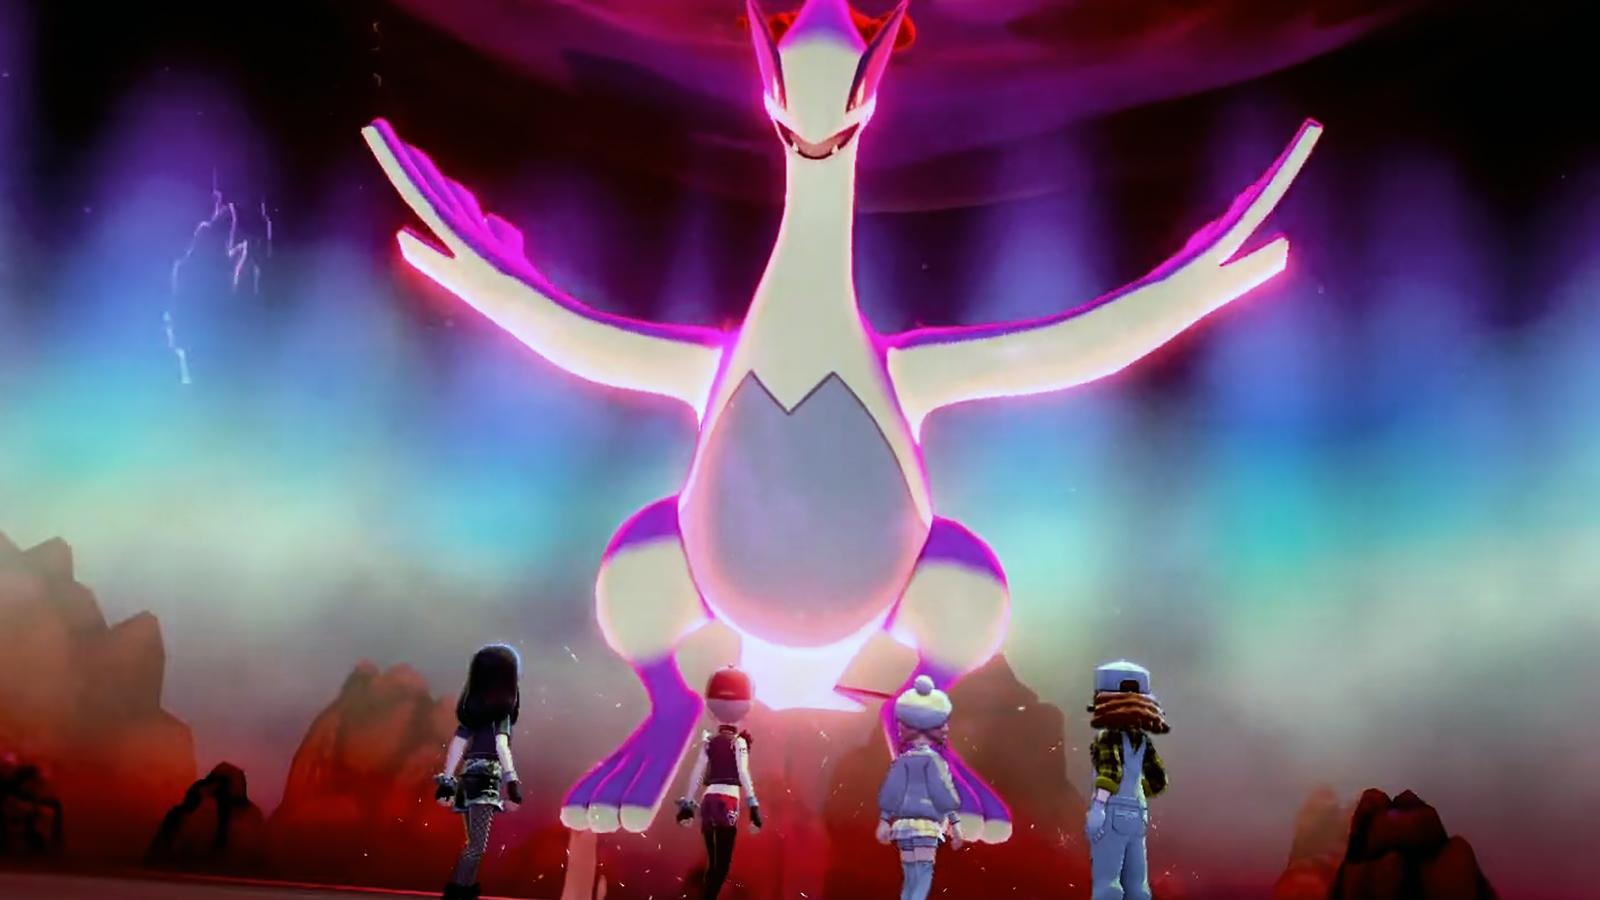 Pokémon Dynamax Adventures Legendary Pokémon and Ultra Beasts list